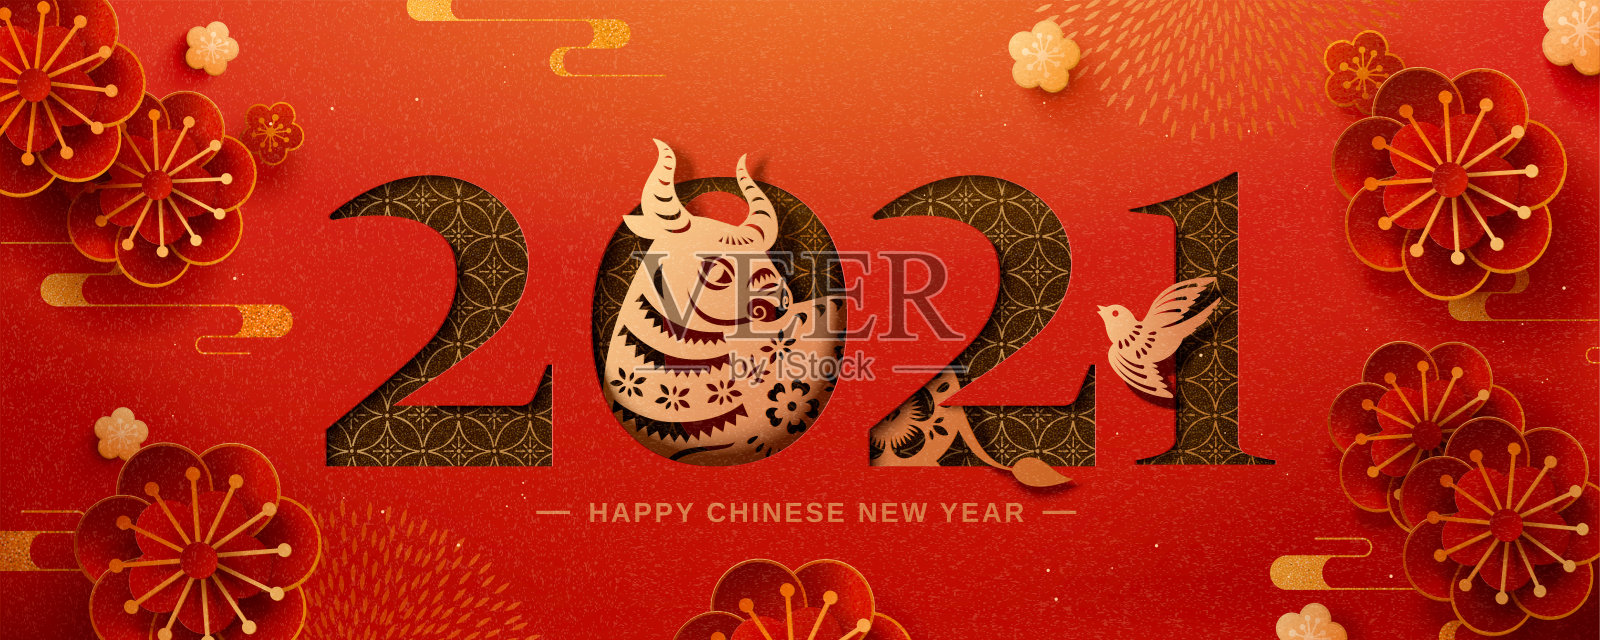 庆祝中国新年的横幅插画图片素材